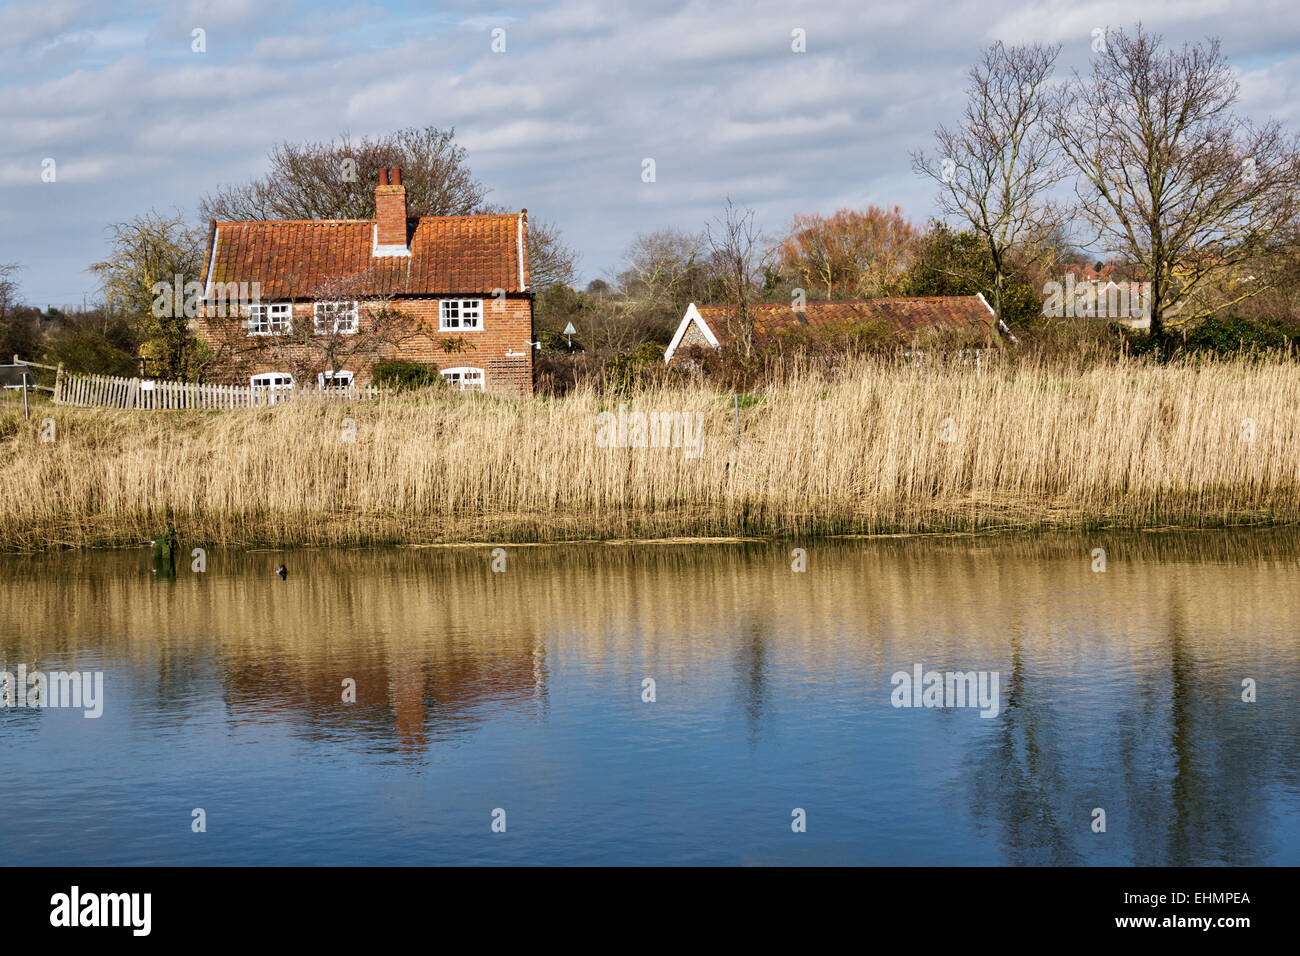 Snape Maltings, Suffolk, UK. La rivière Alde s'exécute au moyen de vastes roselières plein d'échassiers Banque D'Images